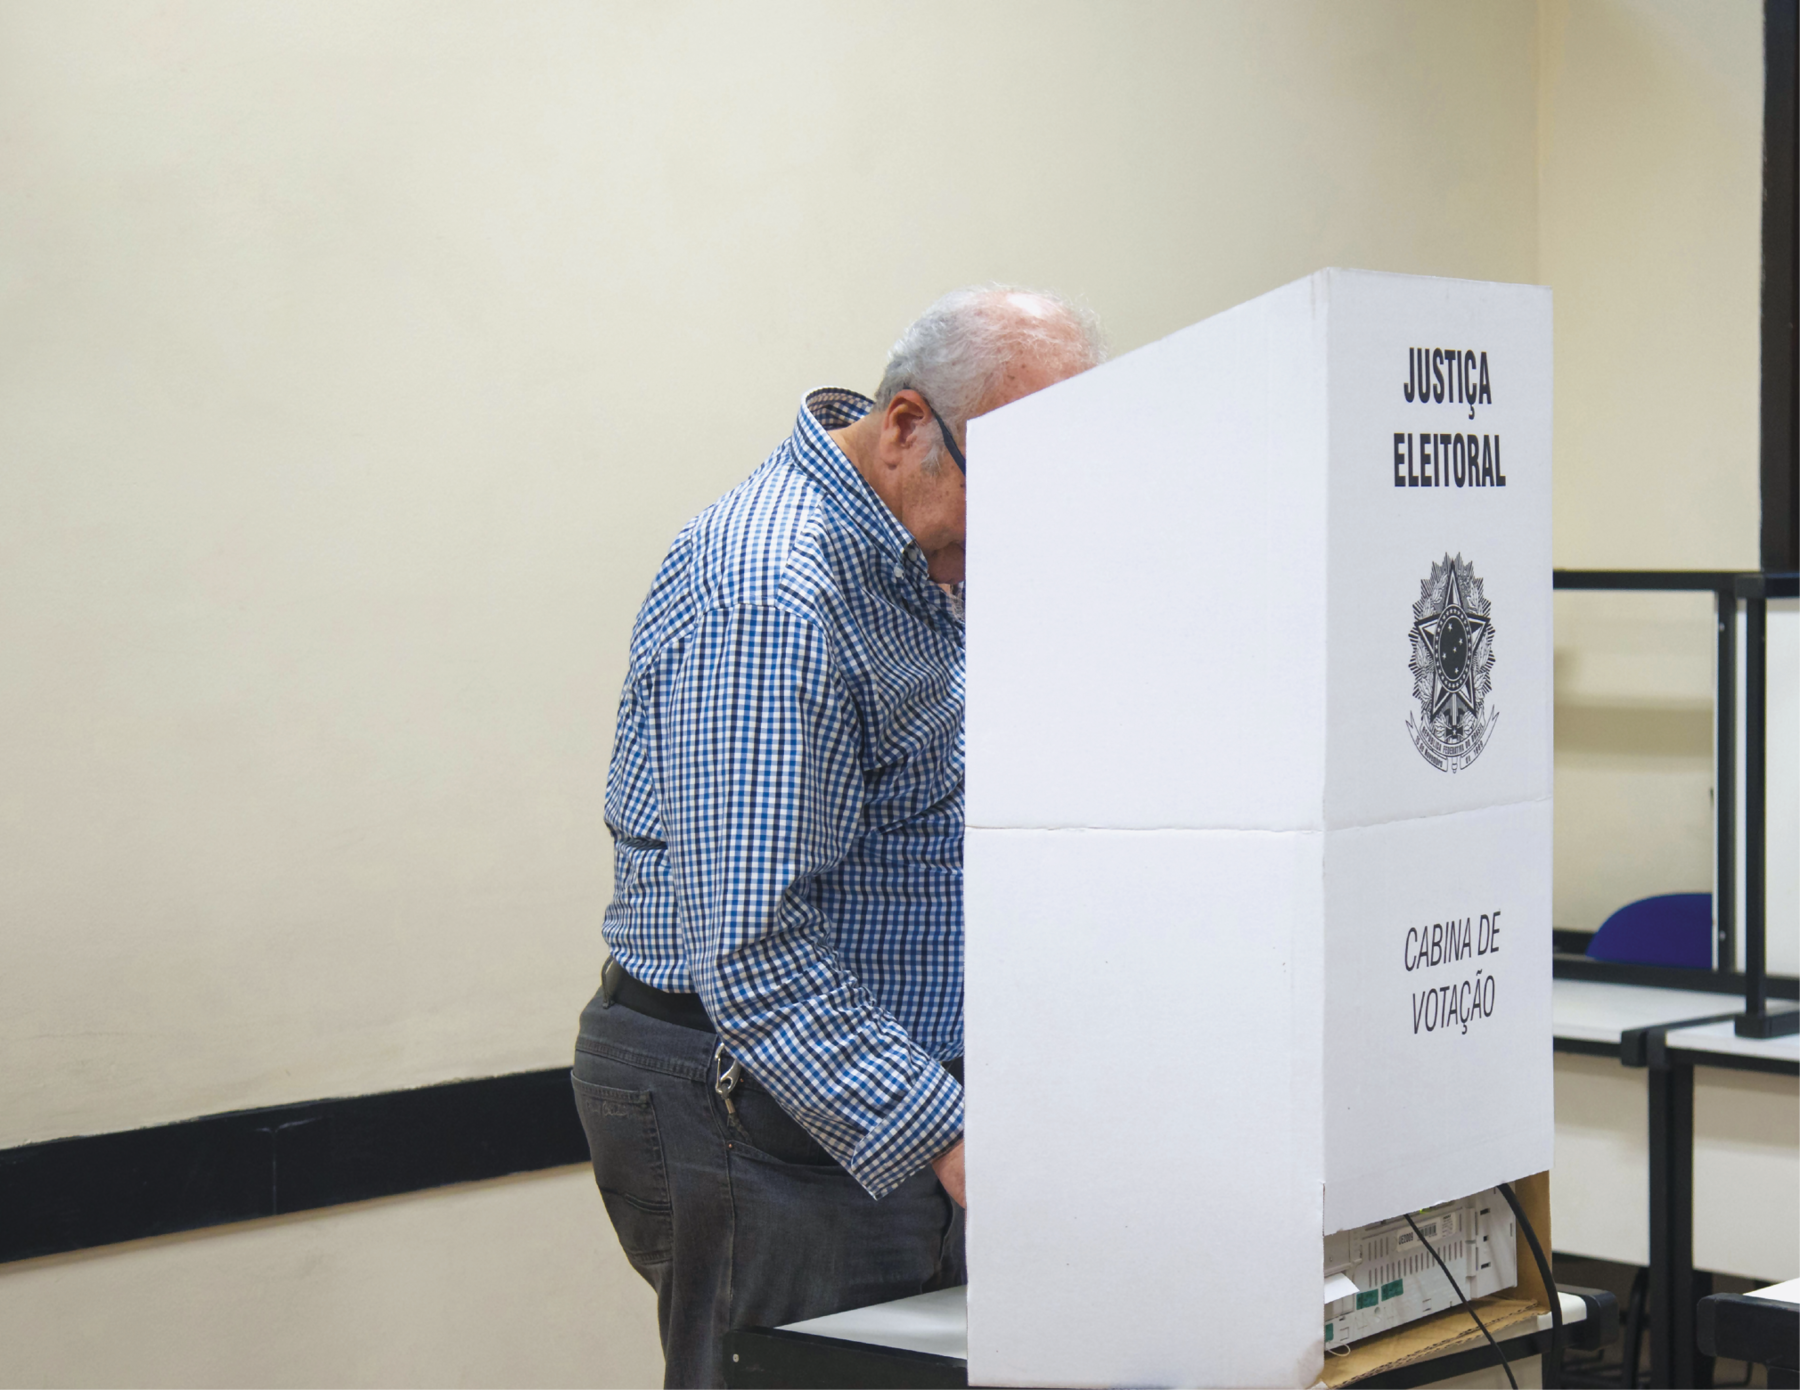 Fotografia. Senhor em pé, votando. Ele usa camisa xadrez azul, preta e branca, e calça escura. Está atrás da Cabine de Votação, biombo de papelão branco com o emblema da Justiça Eleitoral.